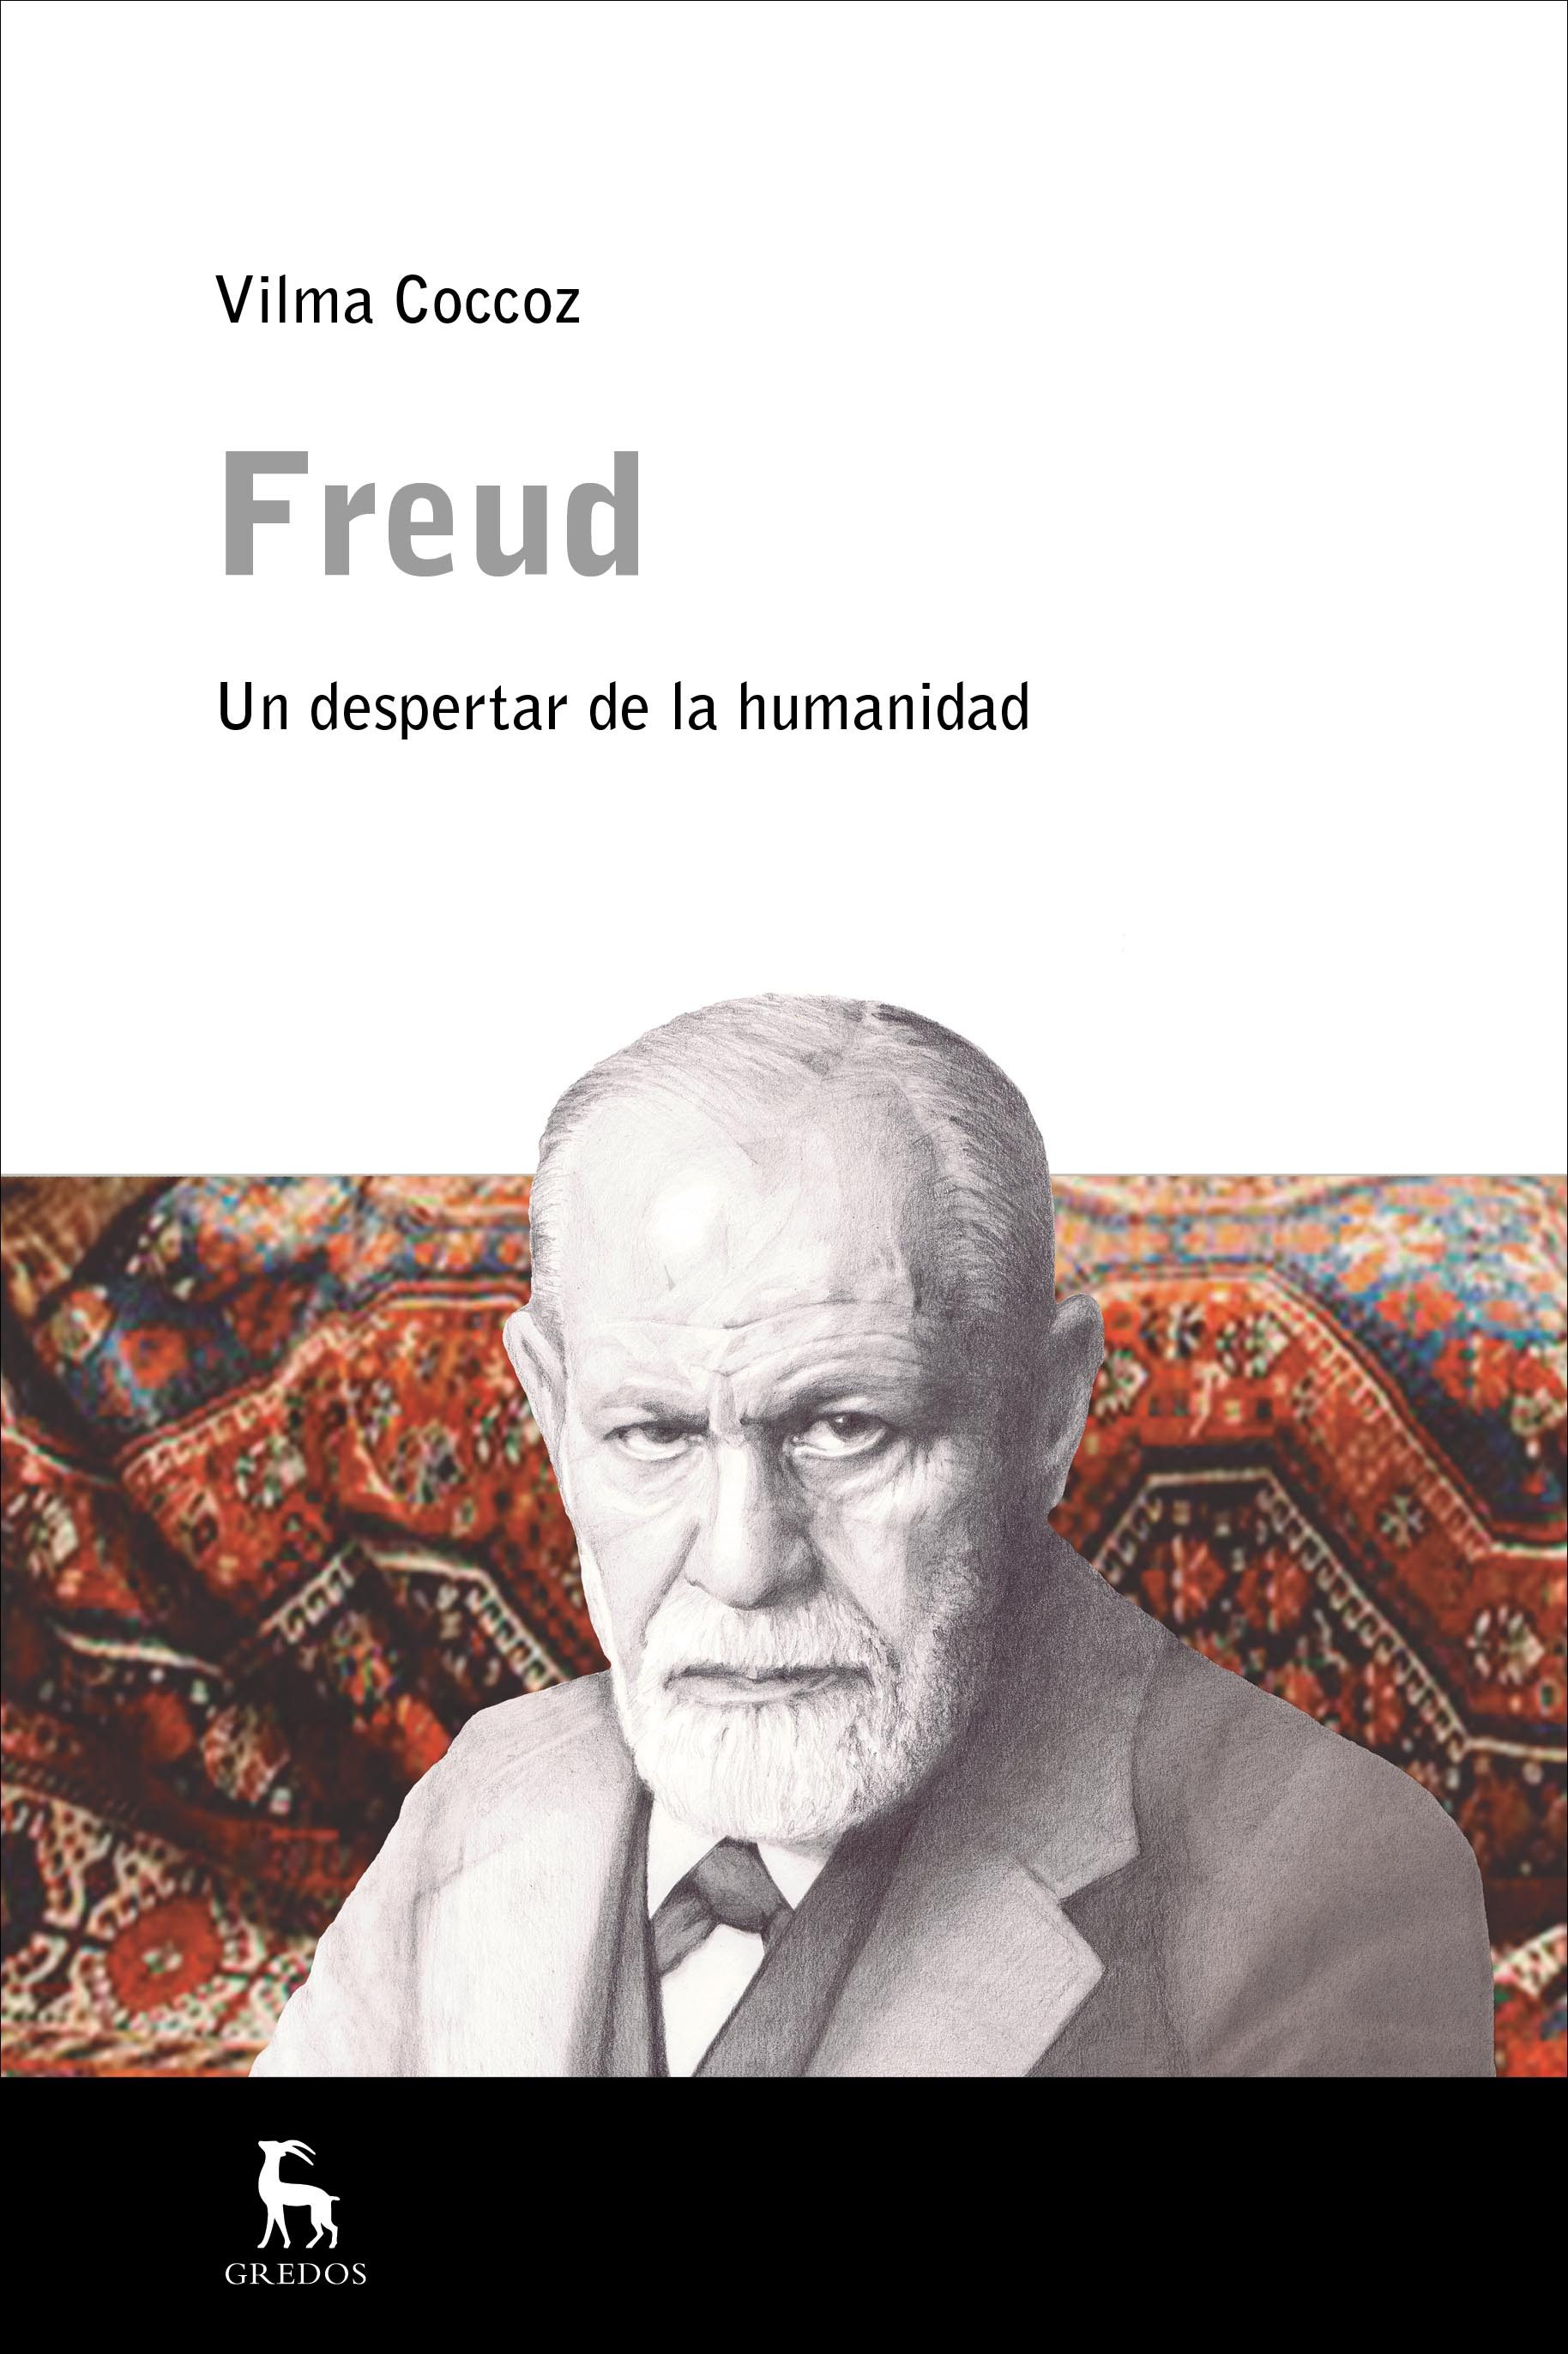 Presentación del libro de Vilma Coccoz: "Freud, un despertar de la humanidad"